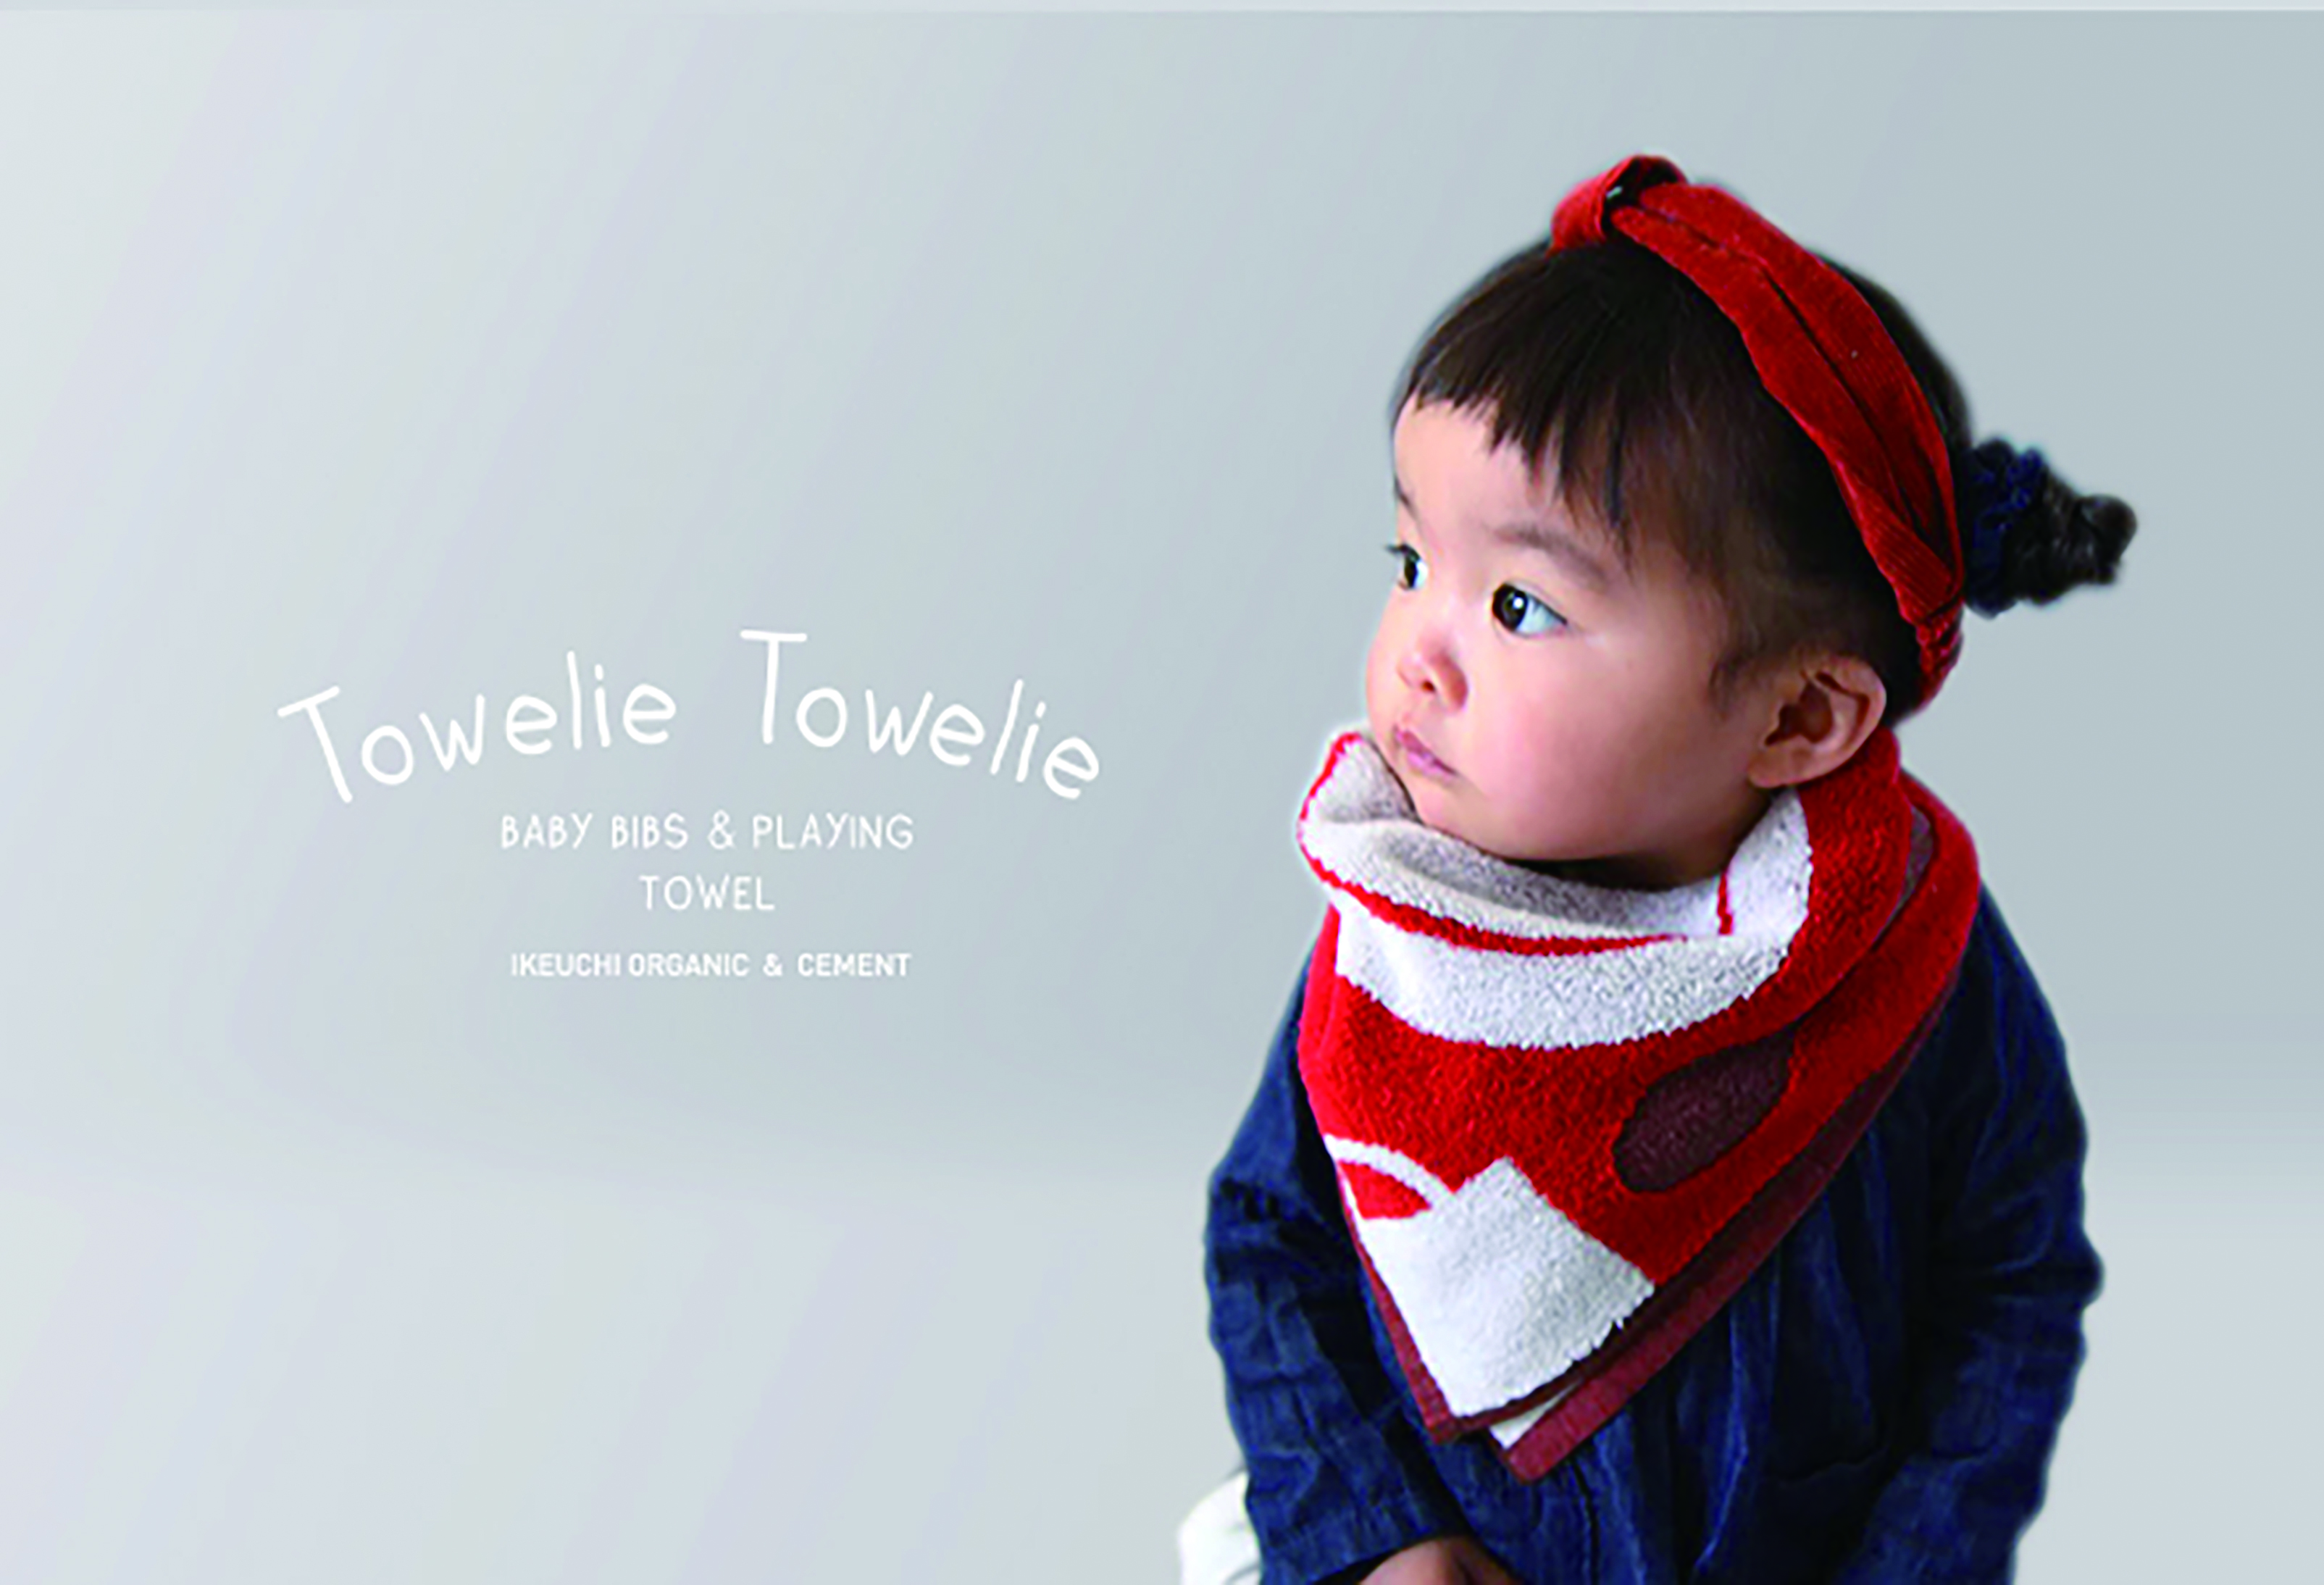 ハンドタオル、スタイ、おままごとにも使える！ 圧倒的な気持ちよさで1 枚3 役こなす、新しい親子タオル 「Towelie Towelie」がデビュー